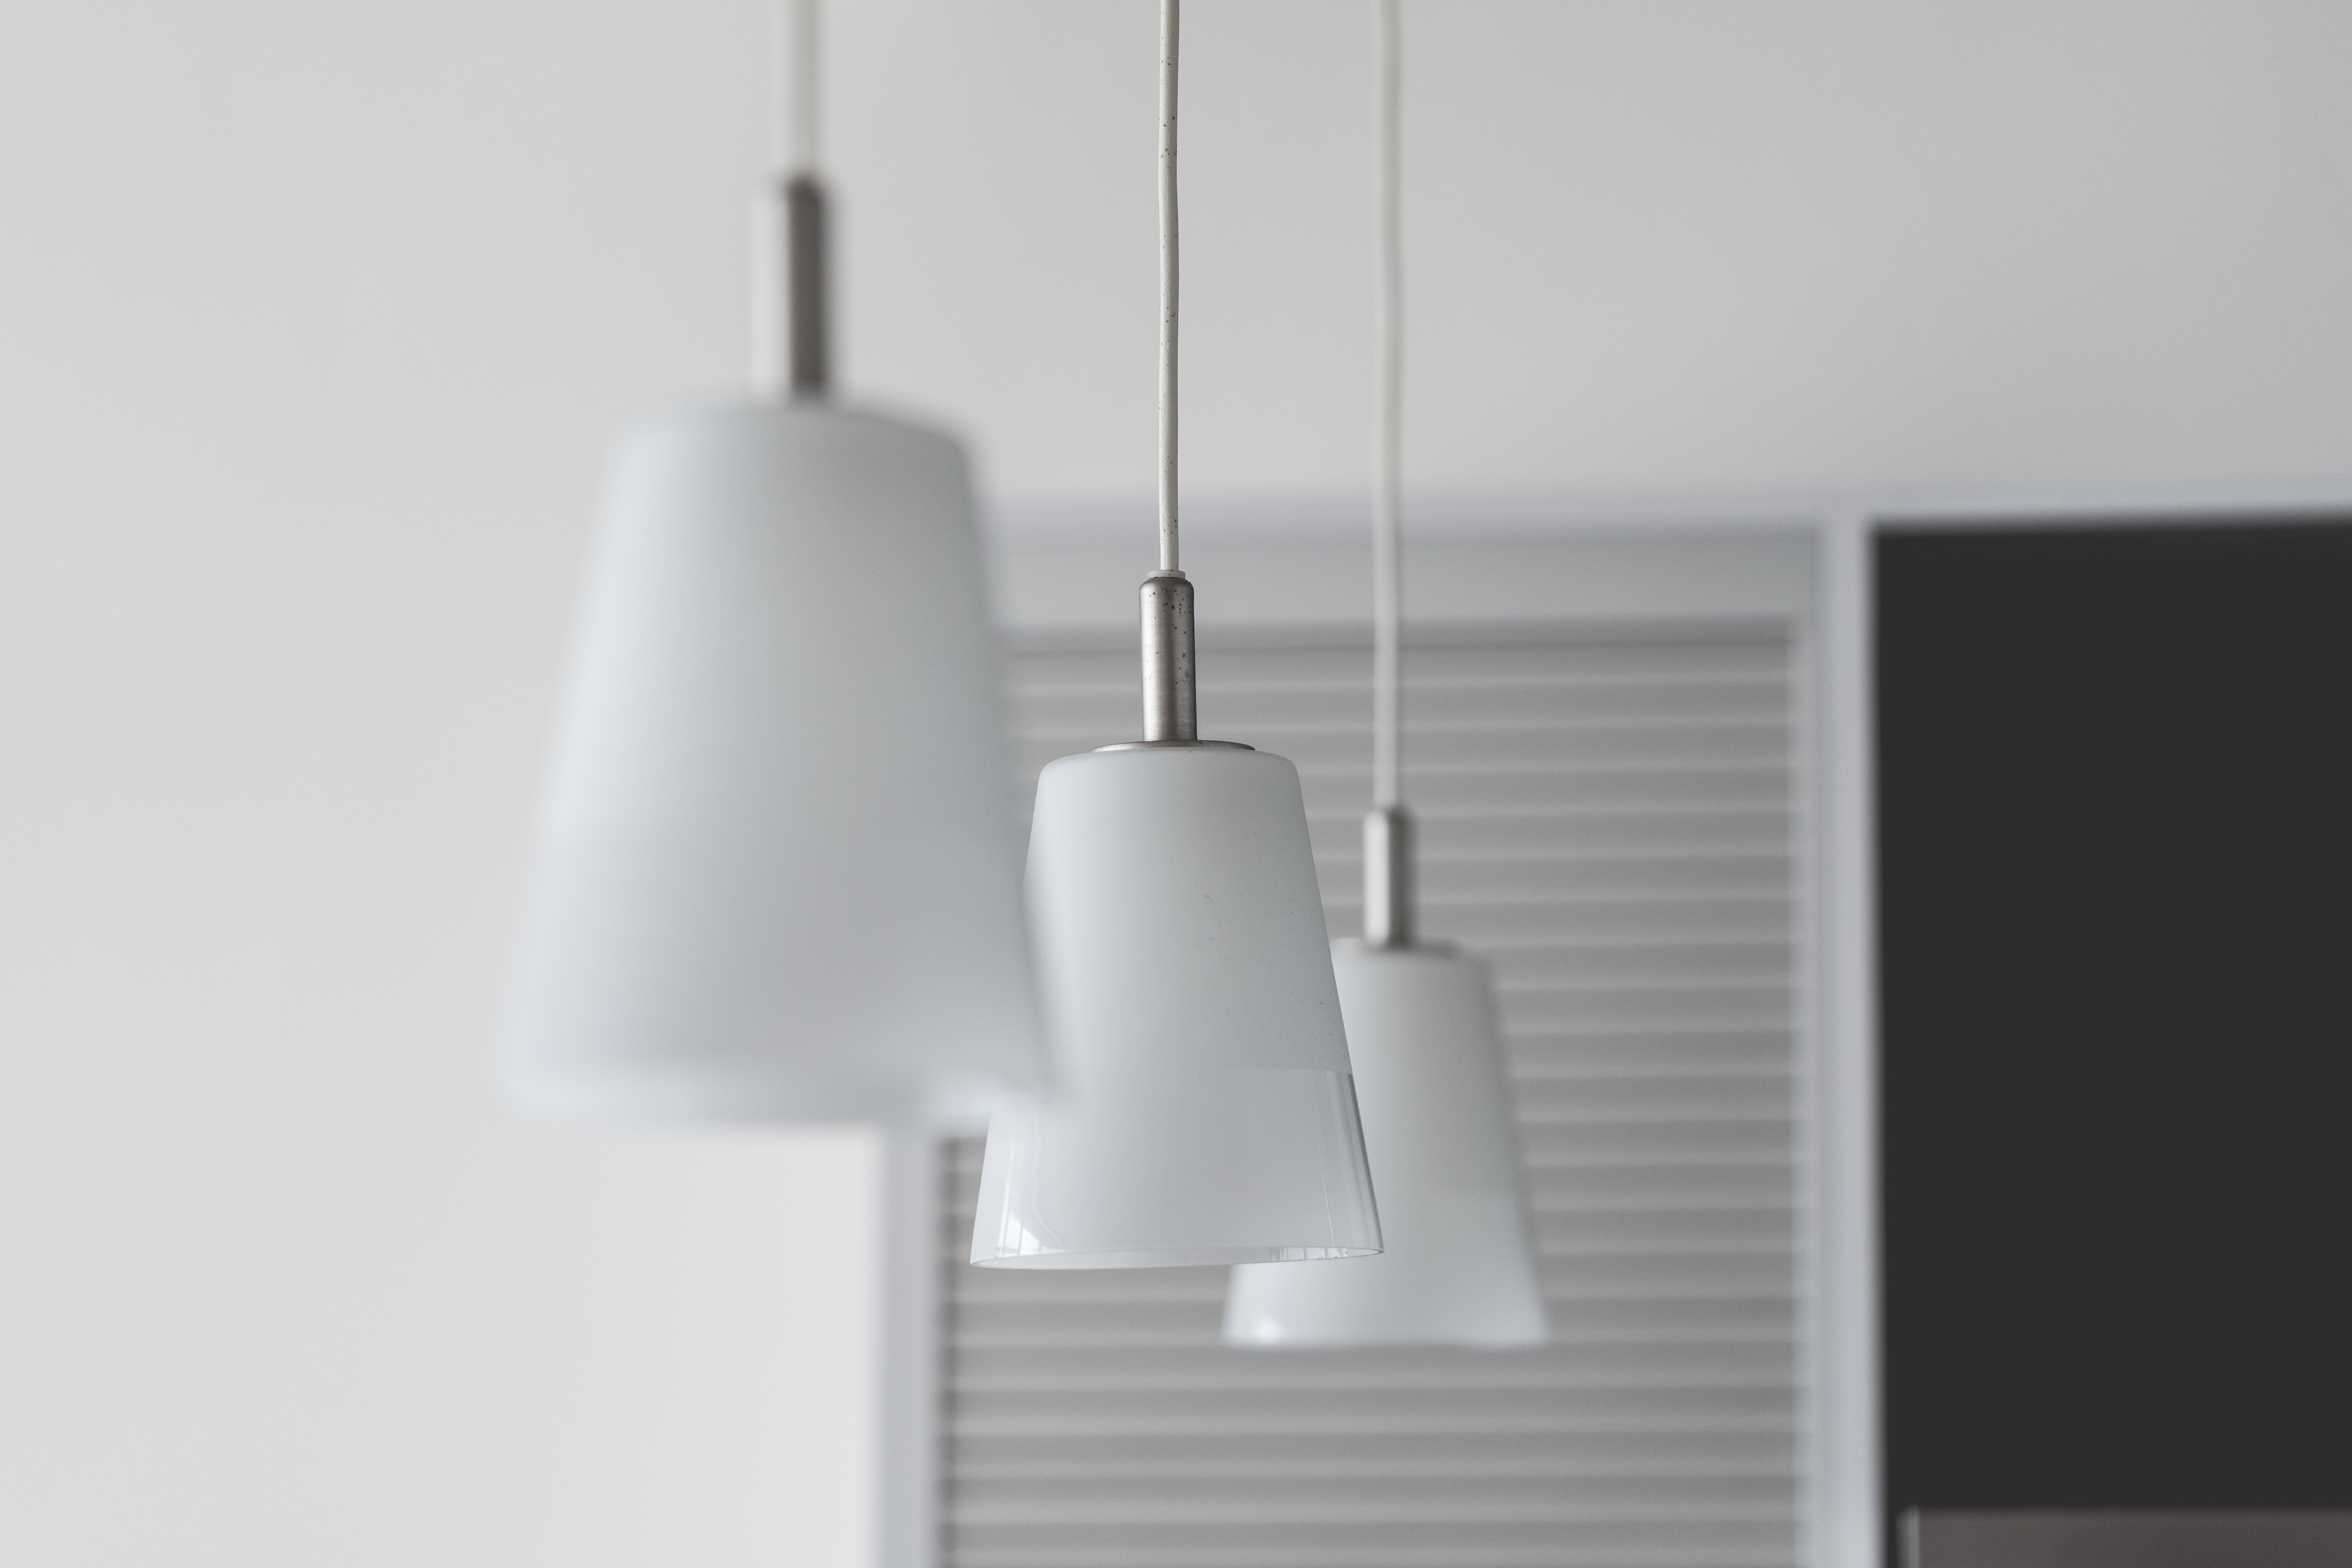 interior-design-studio-lighting-minimalist-showroom-picjumbo-com